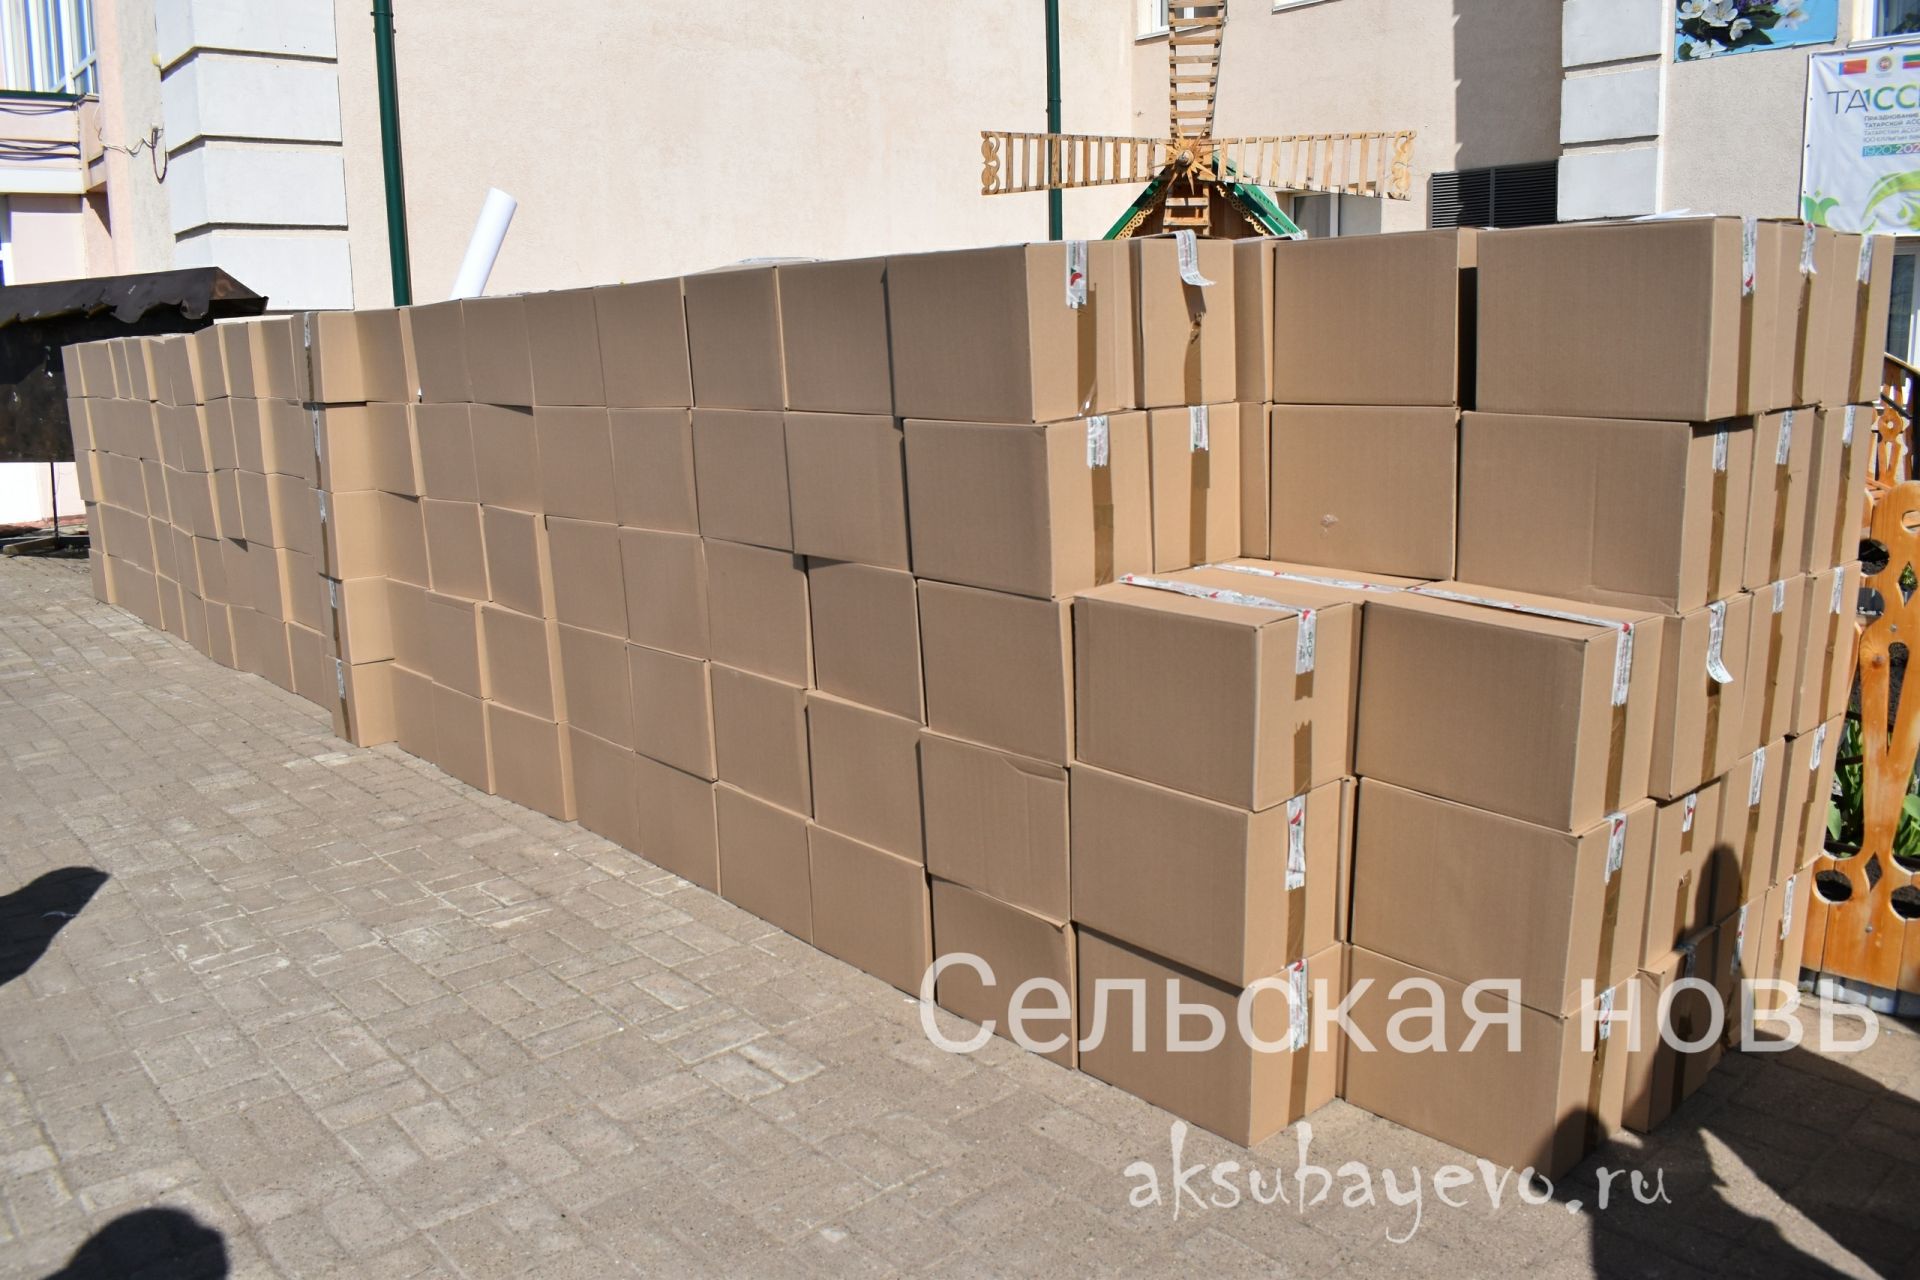 Аксубаевцам вручат 550 продуктовых наборов в рамках акции «Ярдәм янәшә! Помощь рядом!»&nbsp;